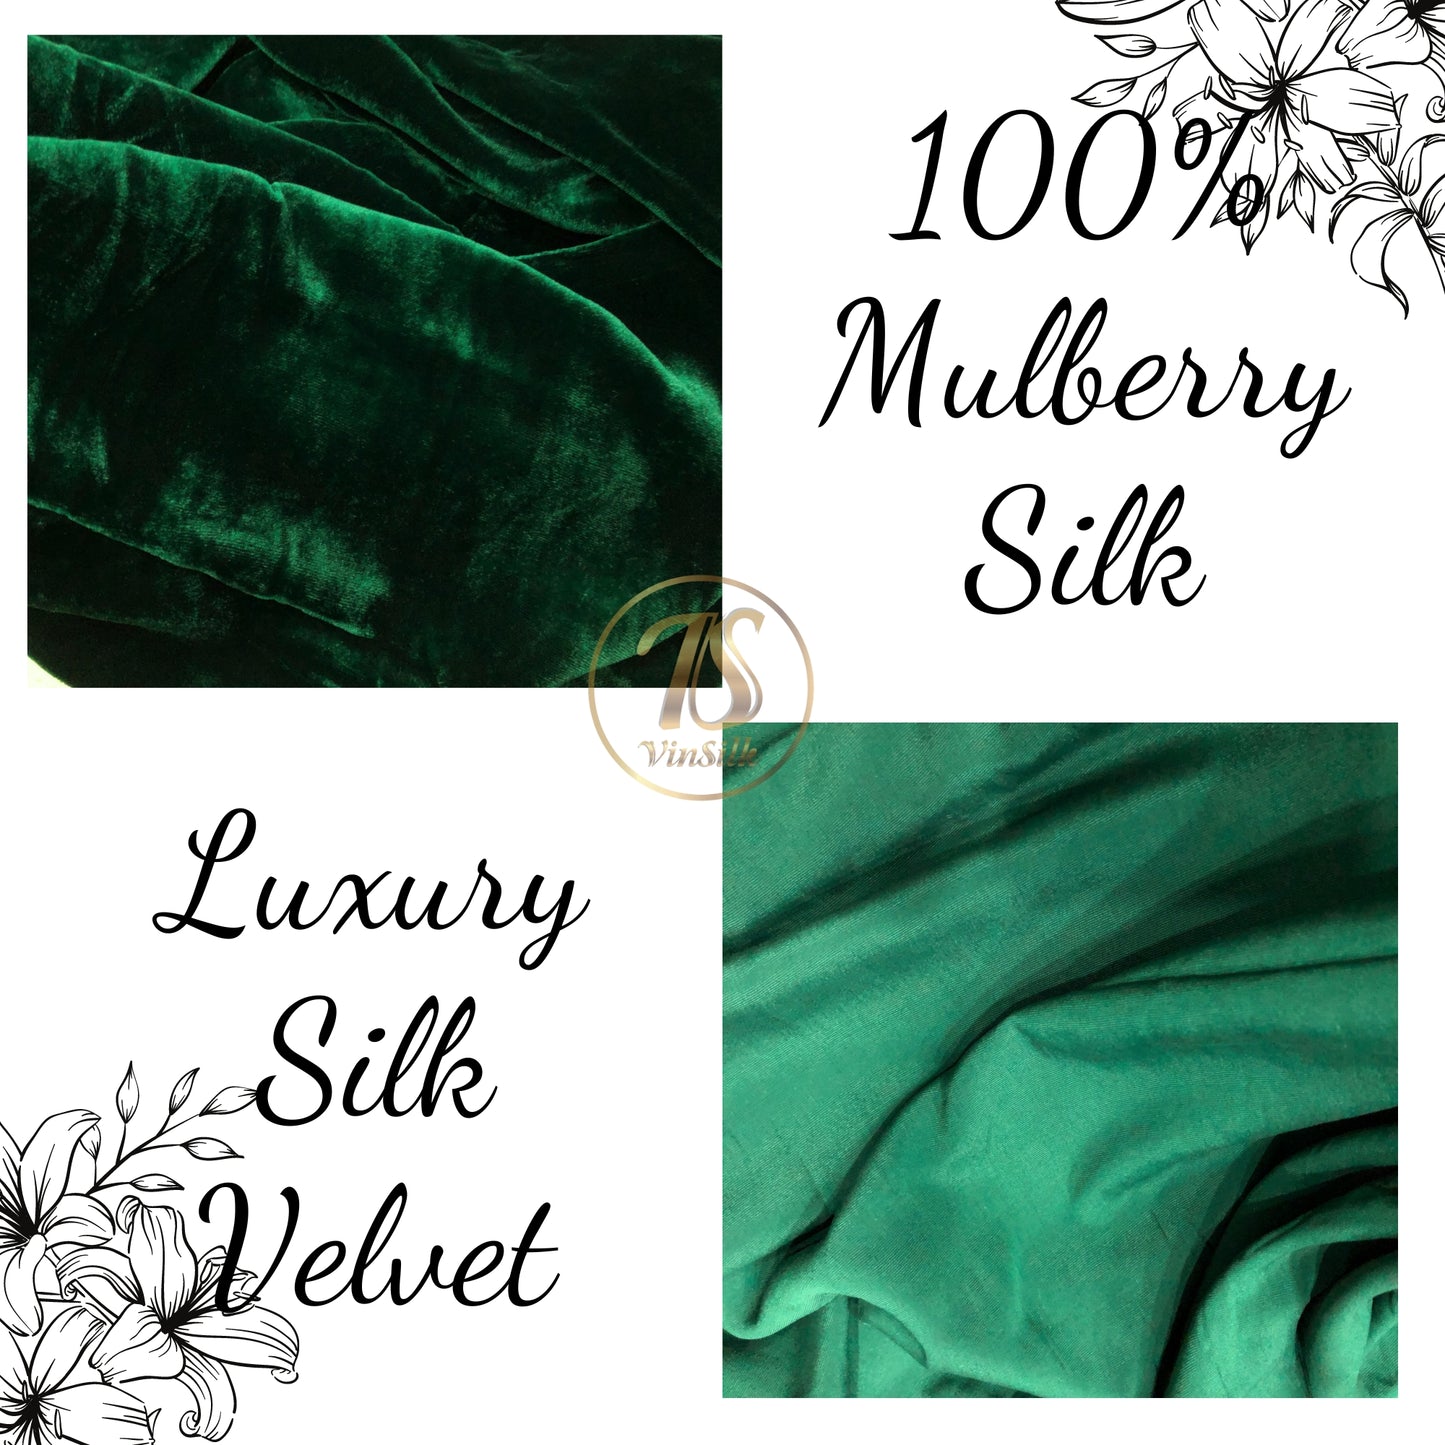 100% MULBERRY SILK VELVET fabric by the yard - Luxury Silk Velvet for Dress, Skirt, High End Garment - Silk apparel fabric - Green silk velvet